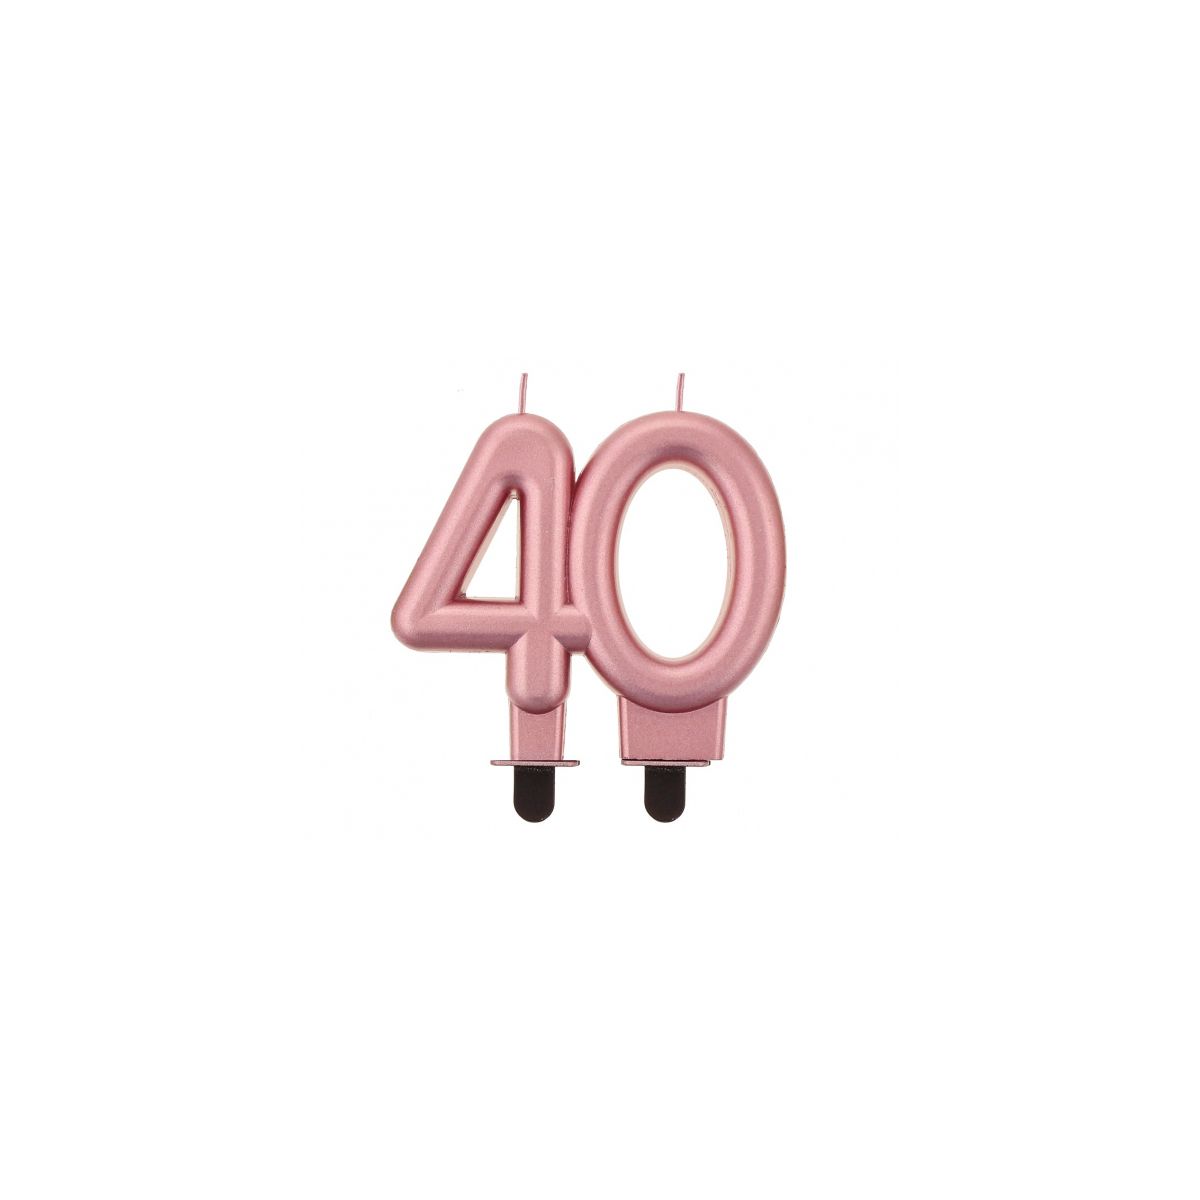 Świeczka urodzinowa nr 40 metalik różowo-złota 8cm Godan (PF-SCRZ40)